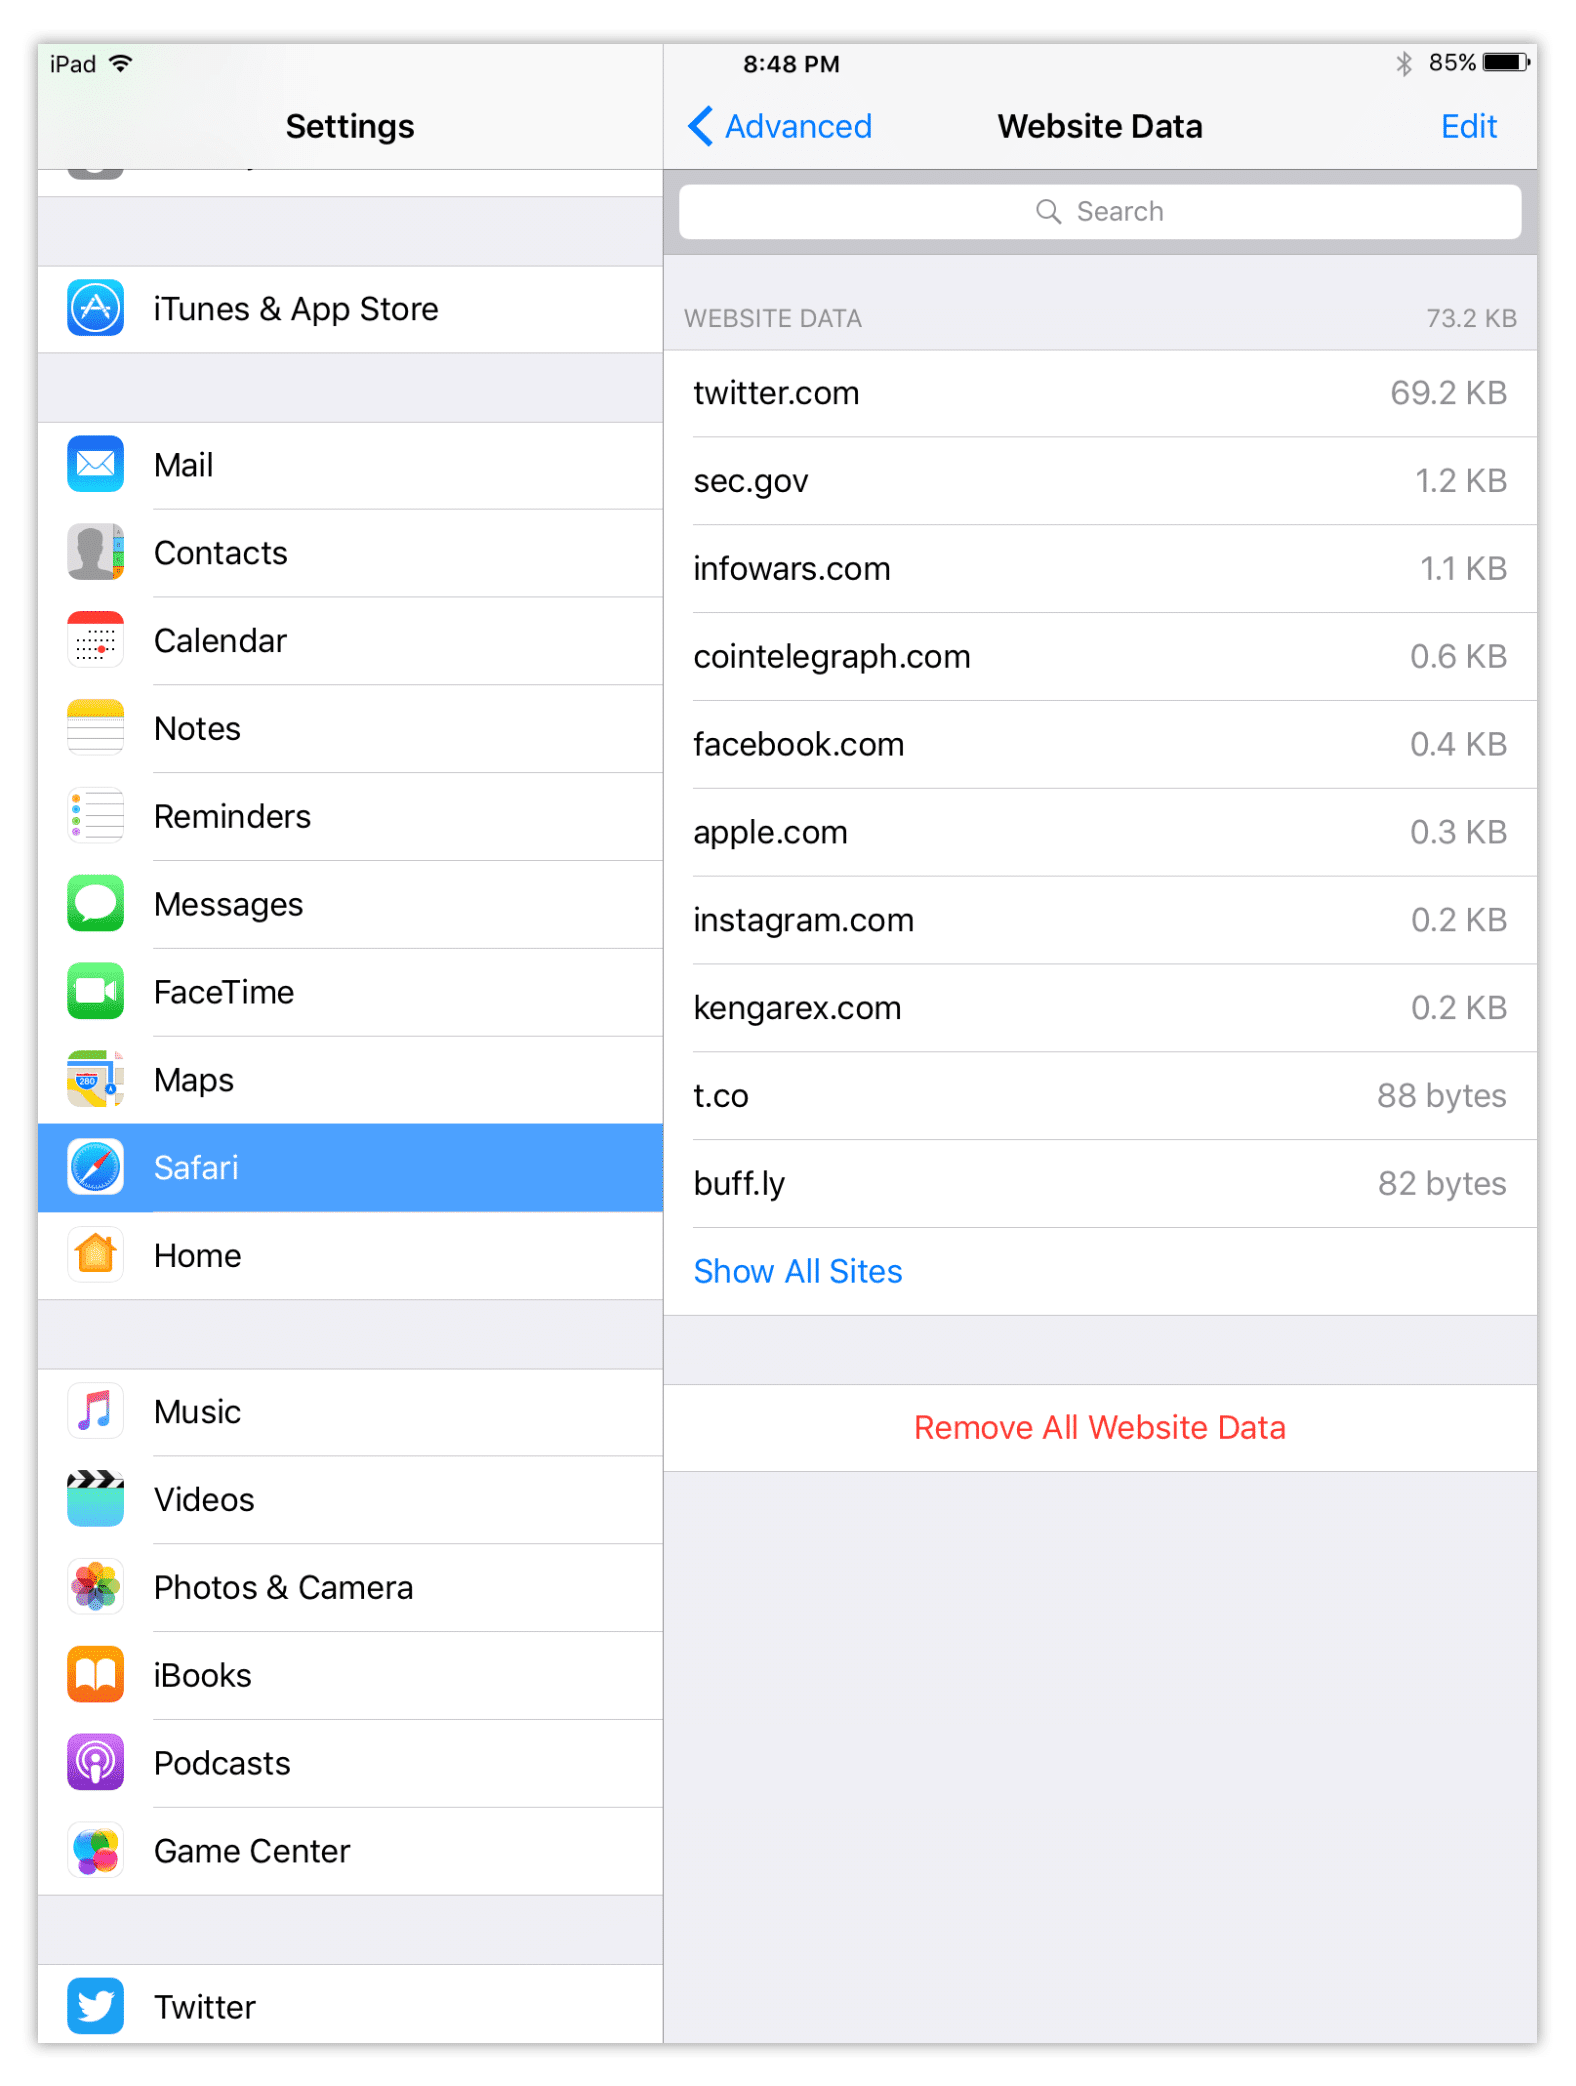 Remove all website data in Safari pn iPad